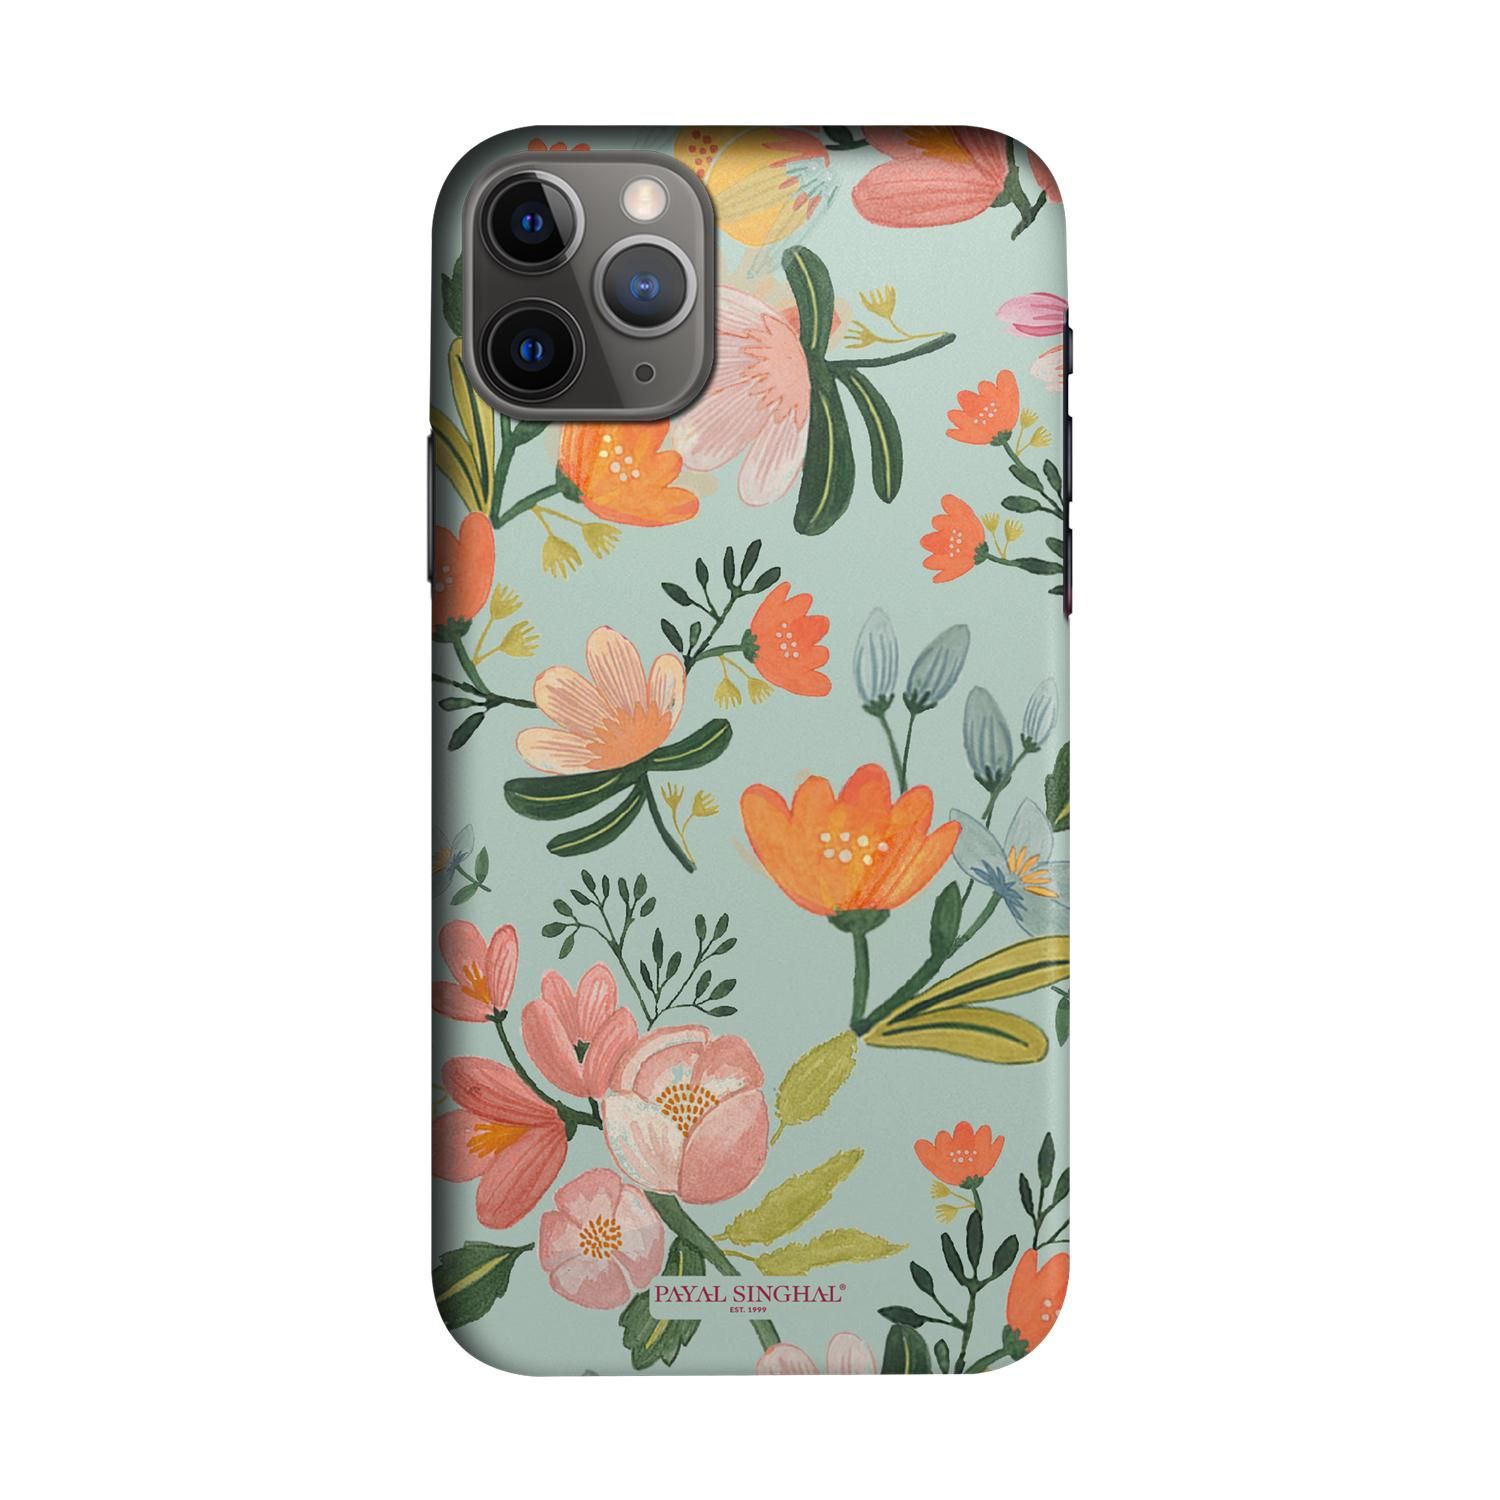 Buy Payal Singhal Aqua Handpainted Flower - Sleek Phone Case for iPhone 11 Pro Online